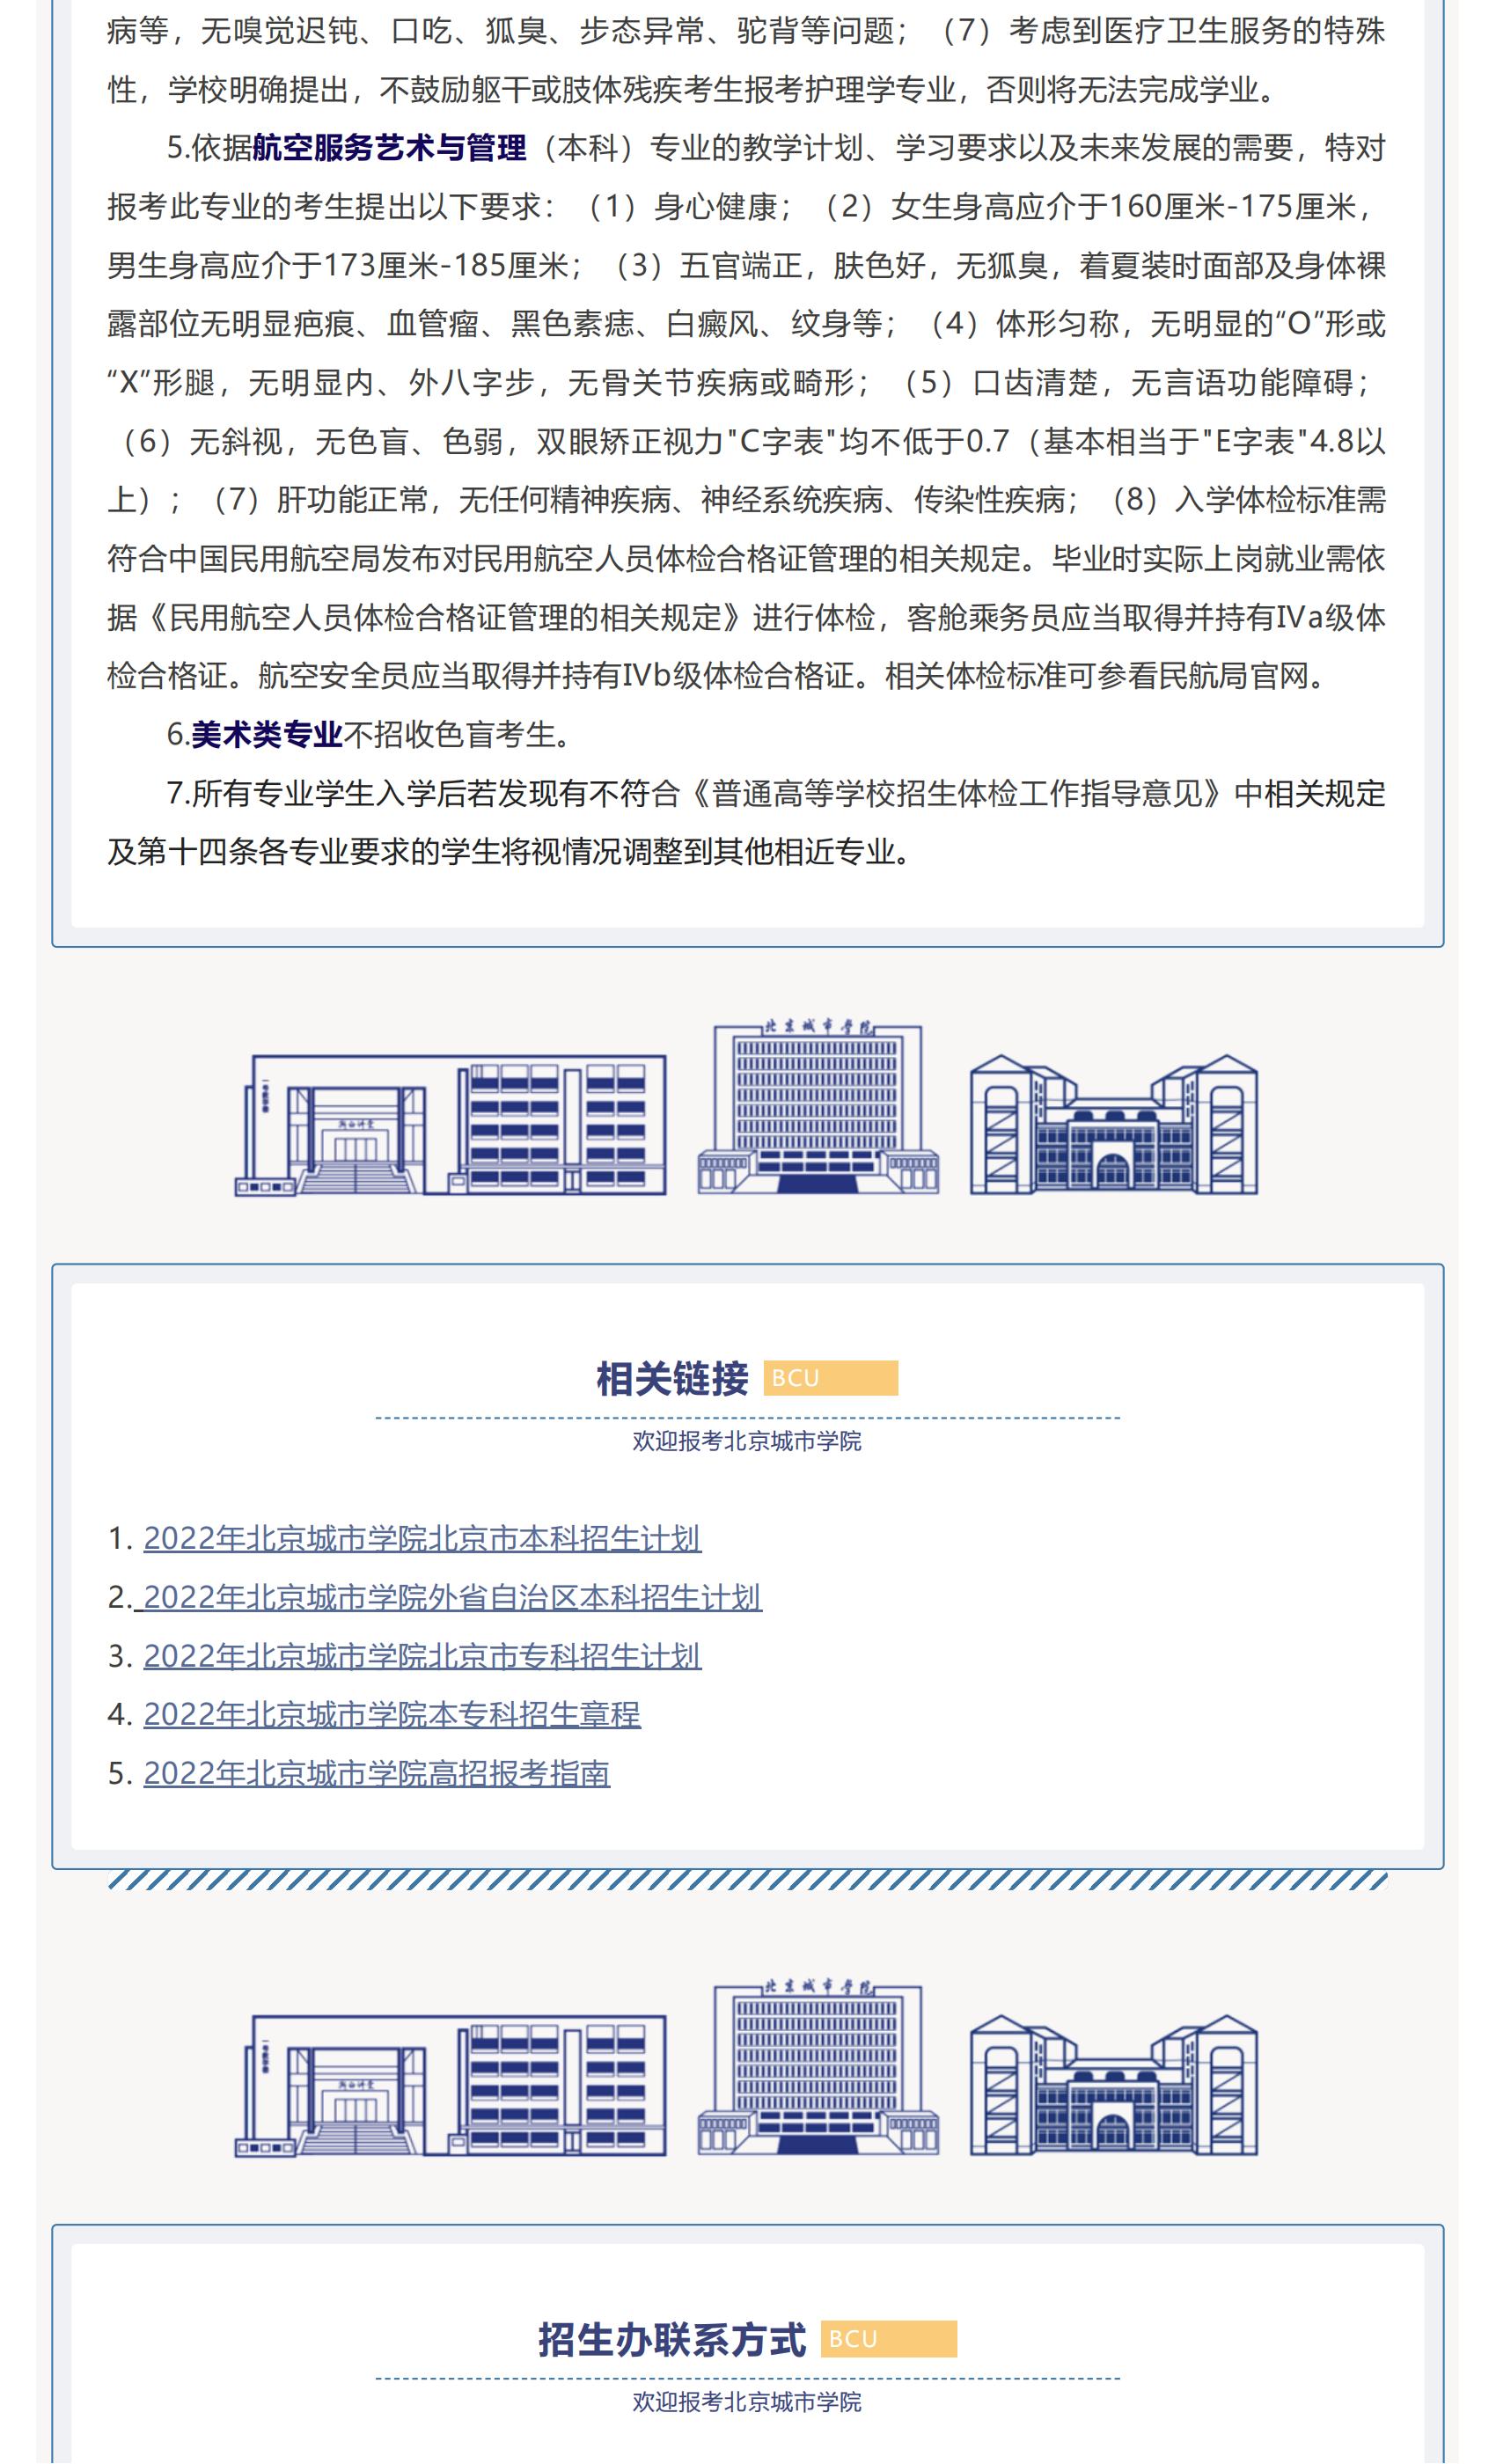 高招快讯 _ 北京城市学院2022年招生计划权威发布_05.jpg